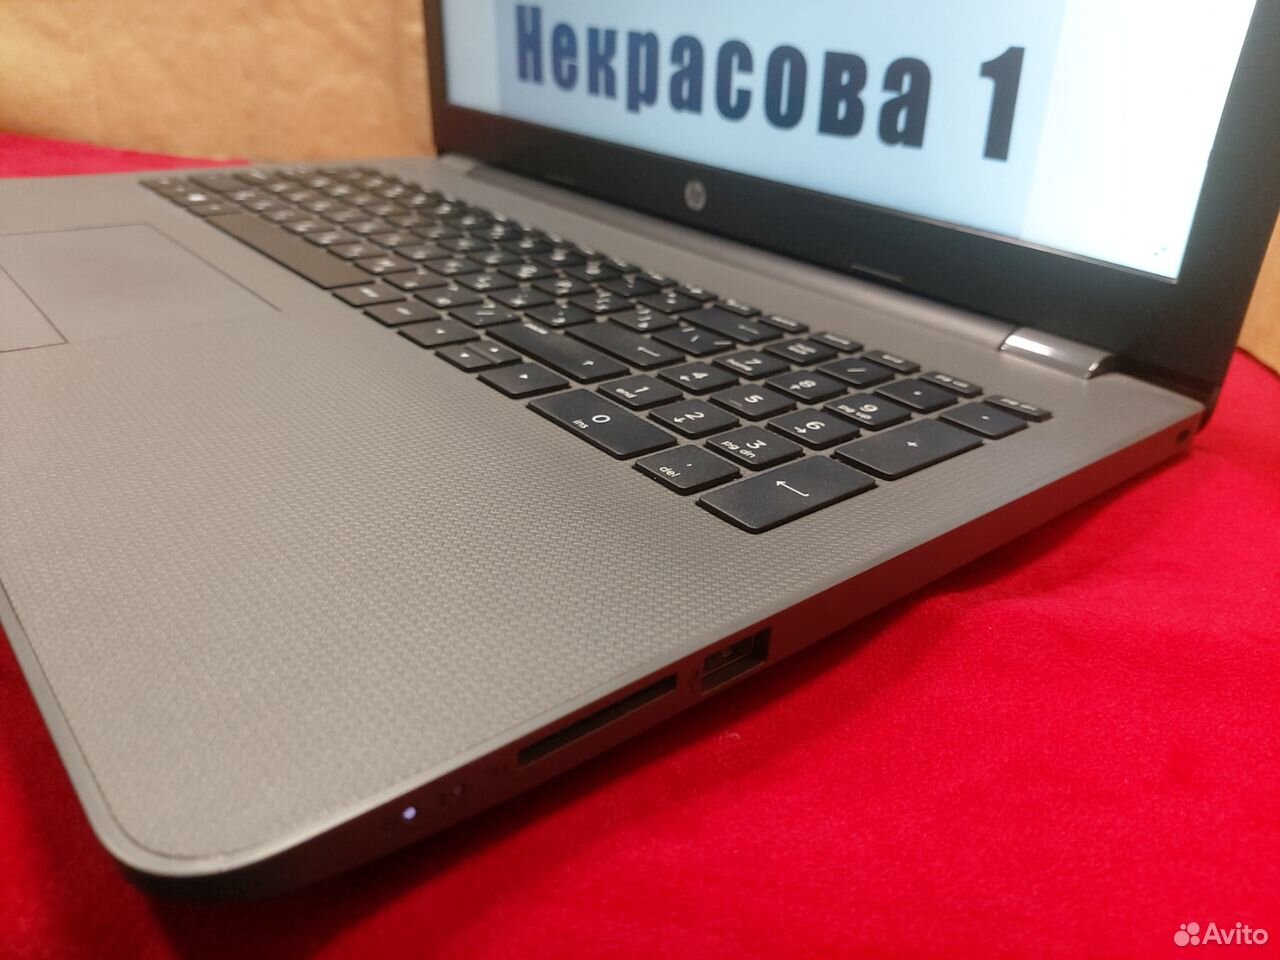 Ноутбук HP для работы и развлечений (Н1) 89061926457 купить 4